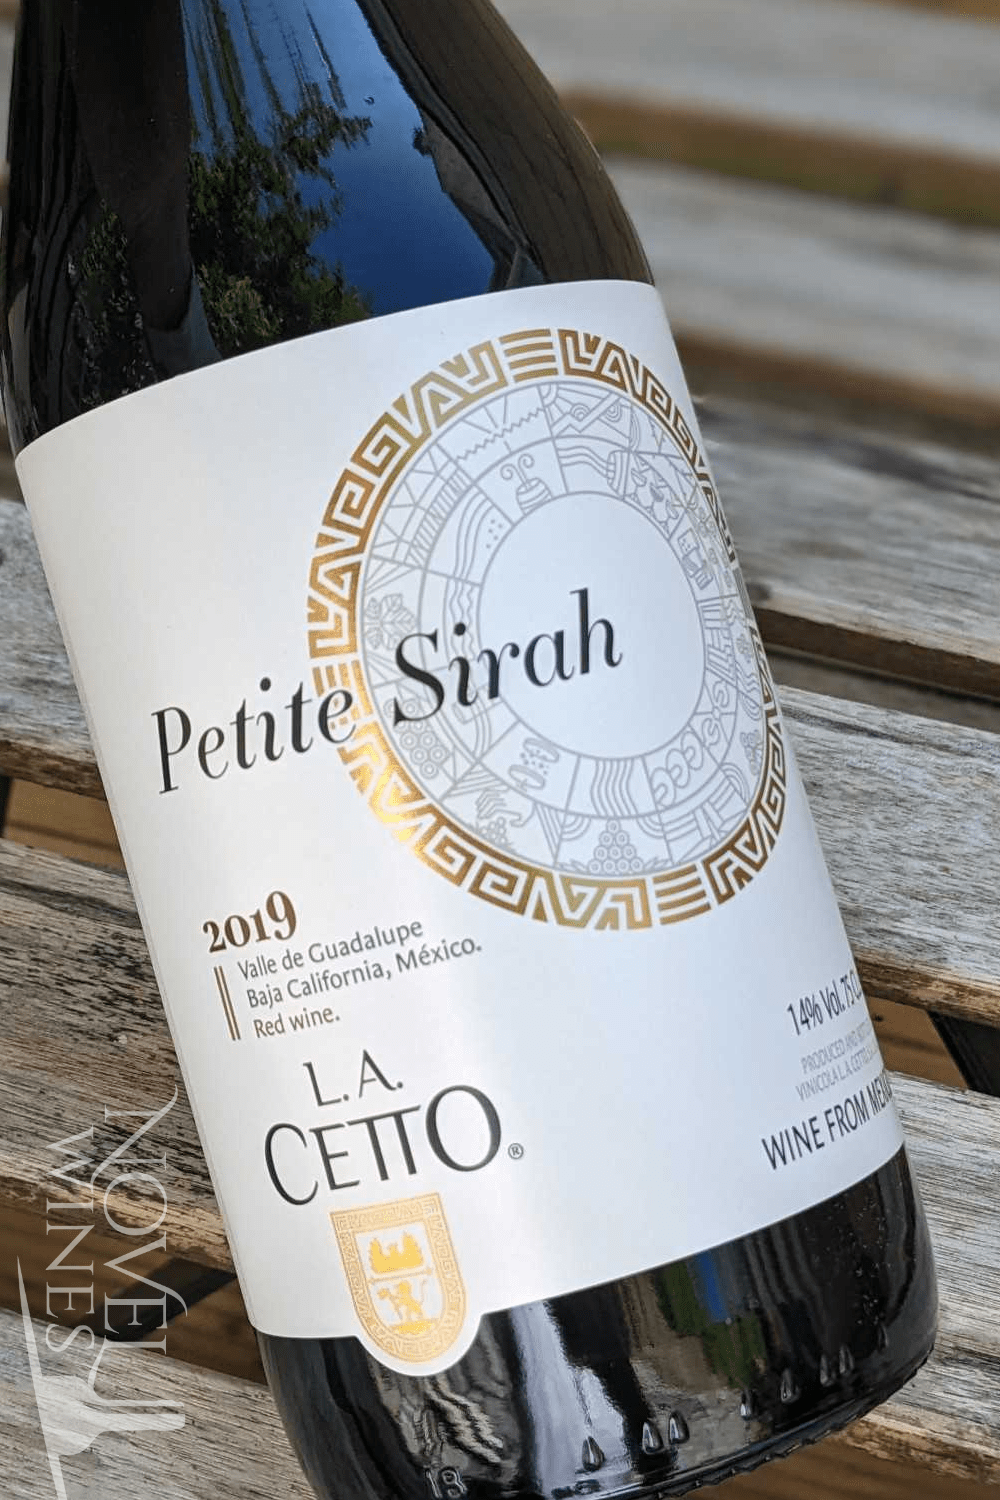 L. A. Cetto Red Wine L. A. Cetto Petite Sirah 2019, Mexico